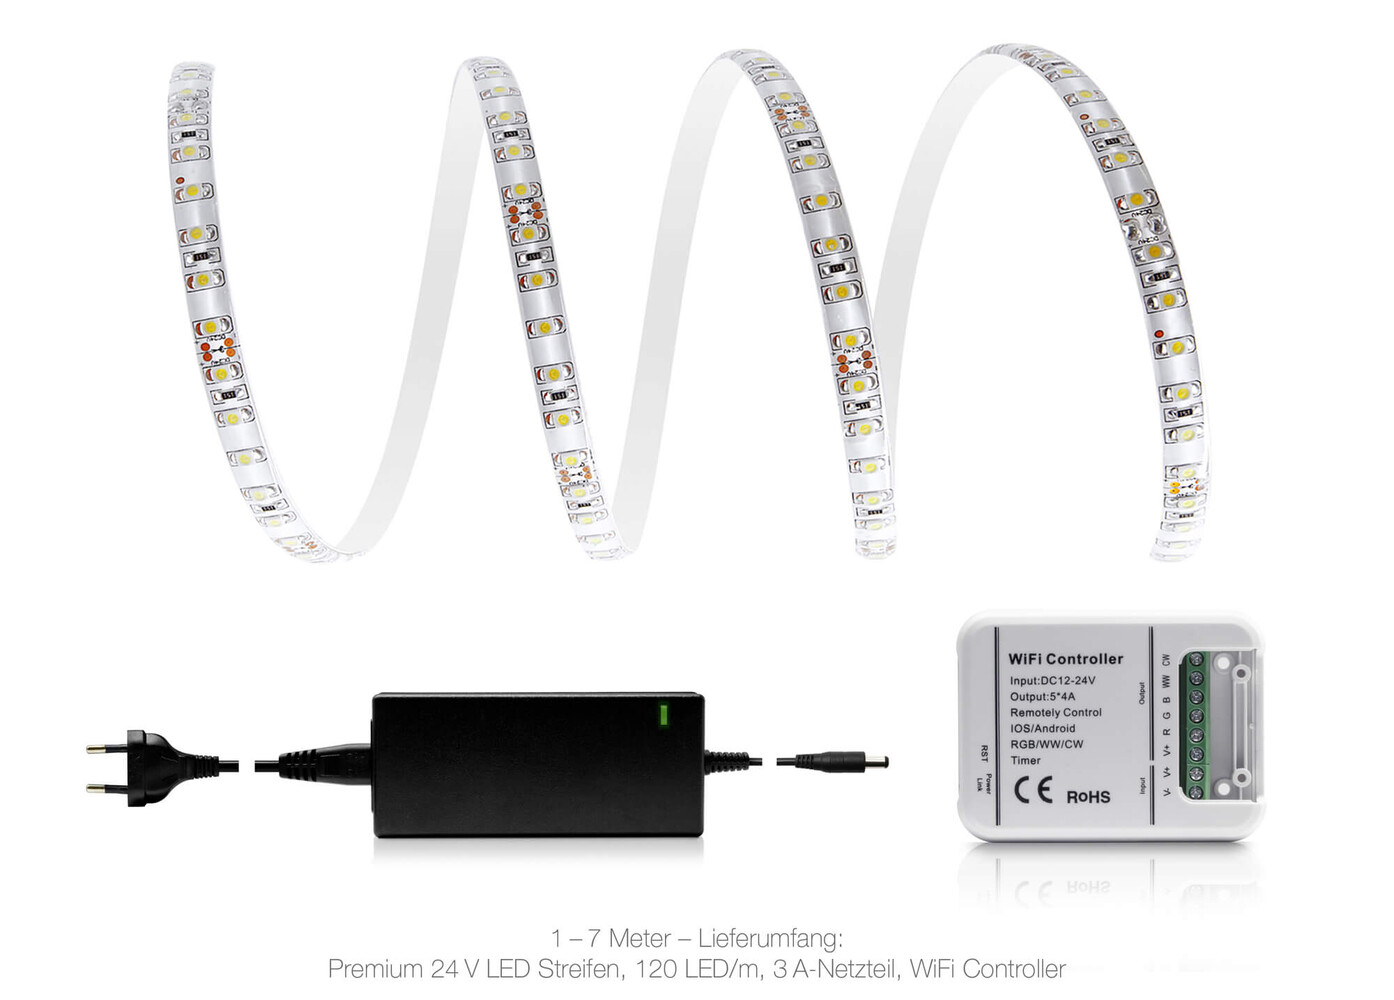 Hochwertiger, kaltweißer LED Streifen von LED Universum mit leistungsstarker 24V Stromversorgung und IP65 Schutzklasse